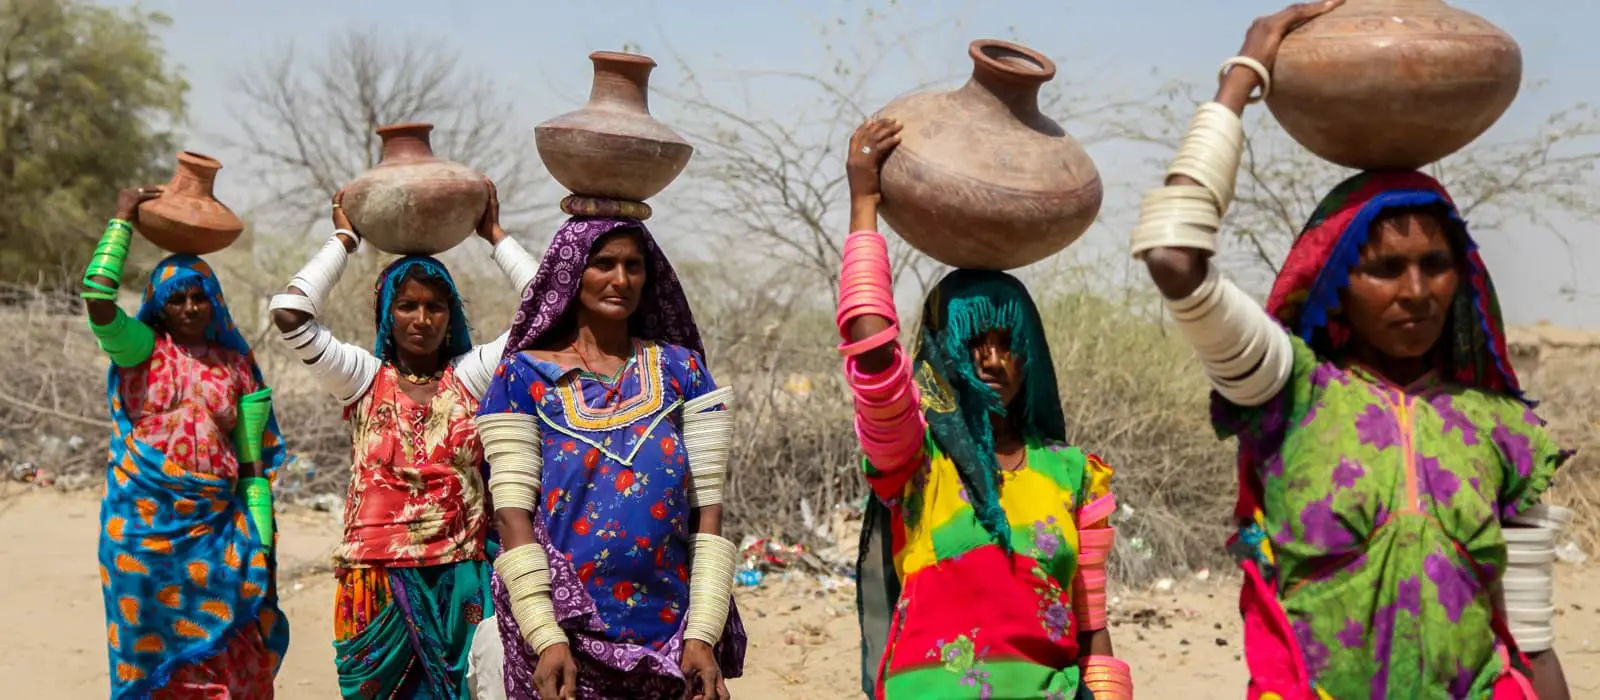 Women in Pakistan go to fetch water